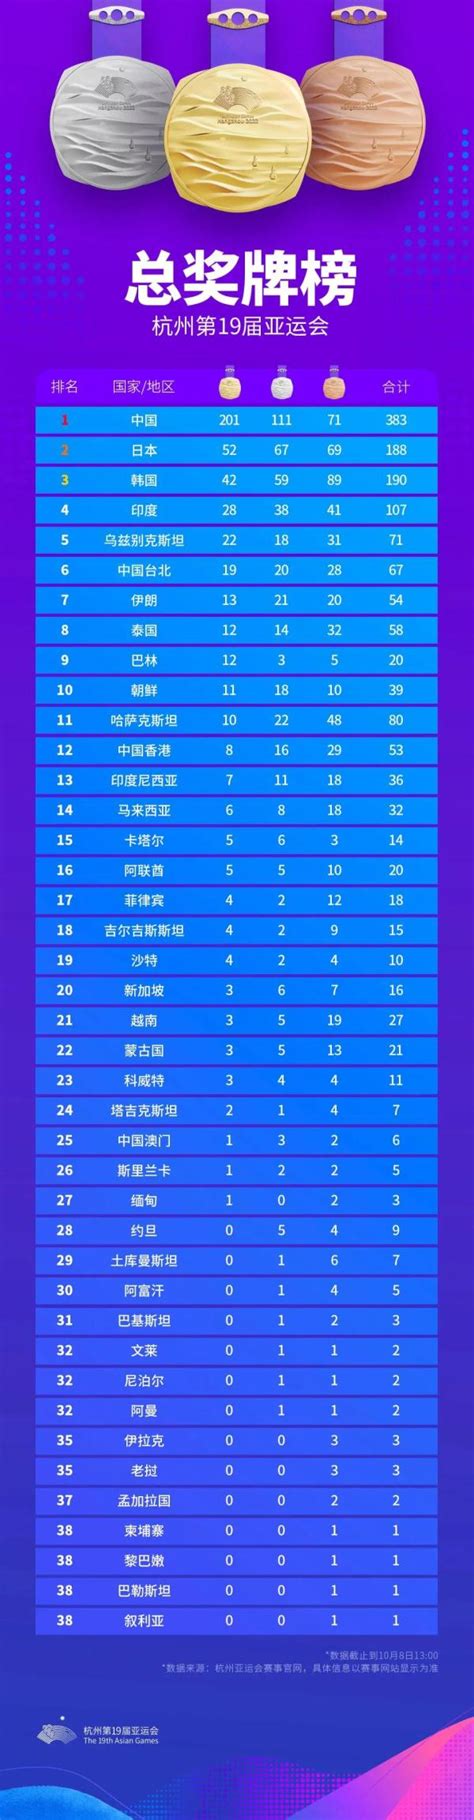 杭州亚运会奖牌榜排名统计表最新 中国队金银铜奖牌数-闽南网